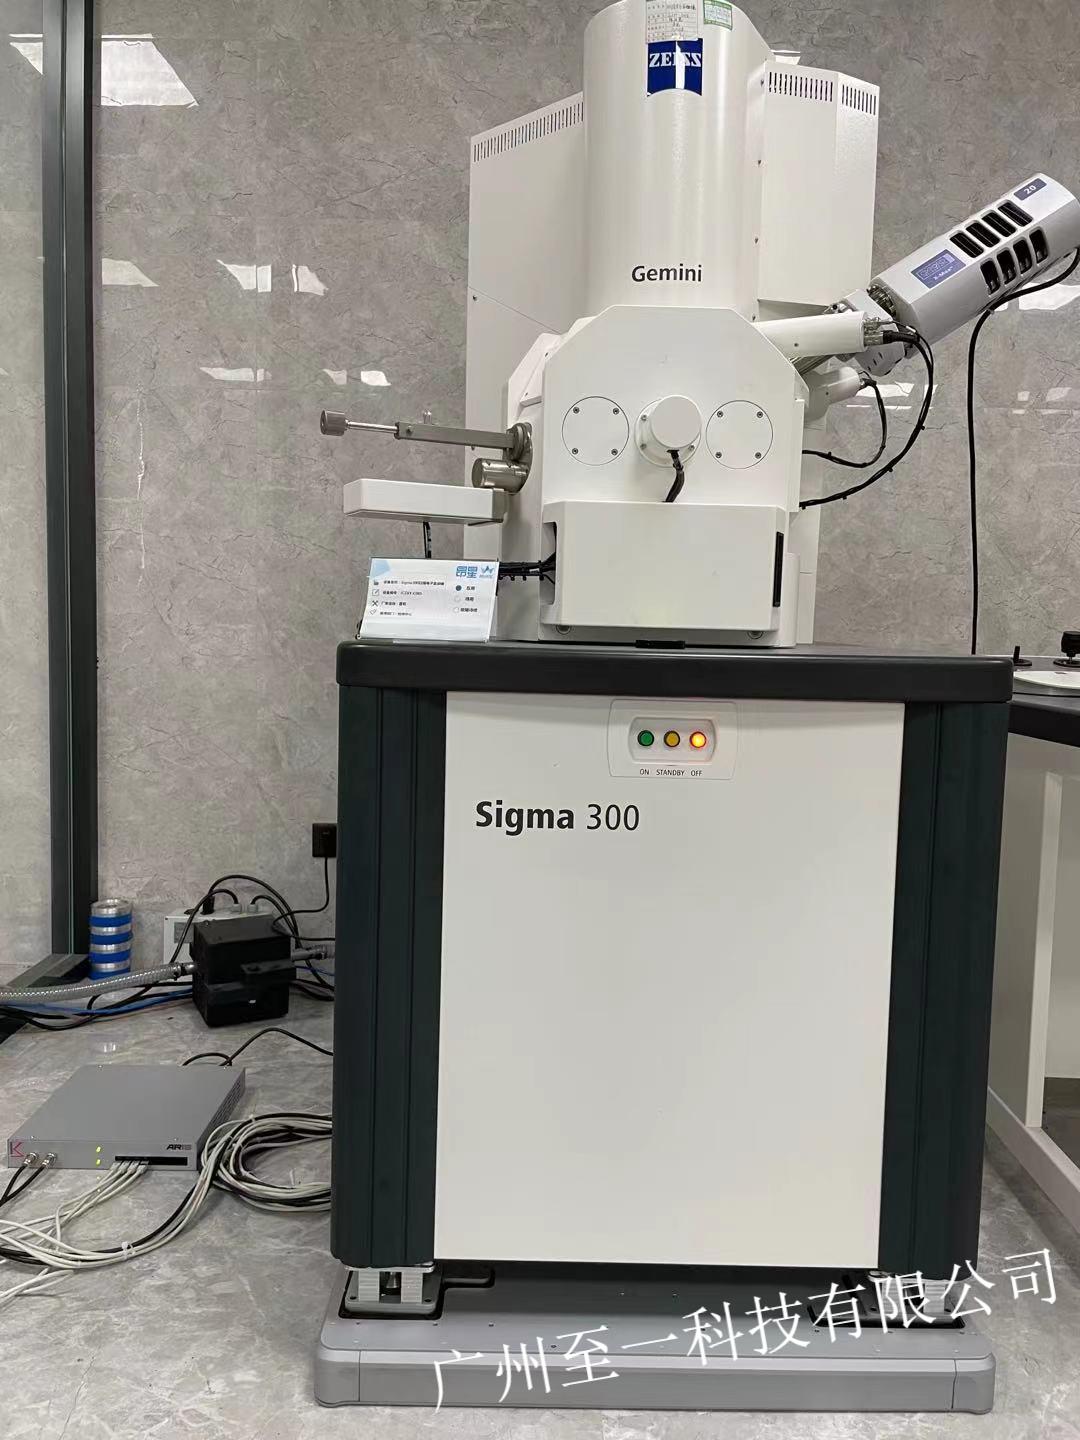 Sigma300掃面電鏡Aris Integra主動隔振系統安裝案例圖.jpeg